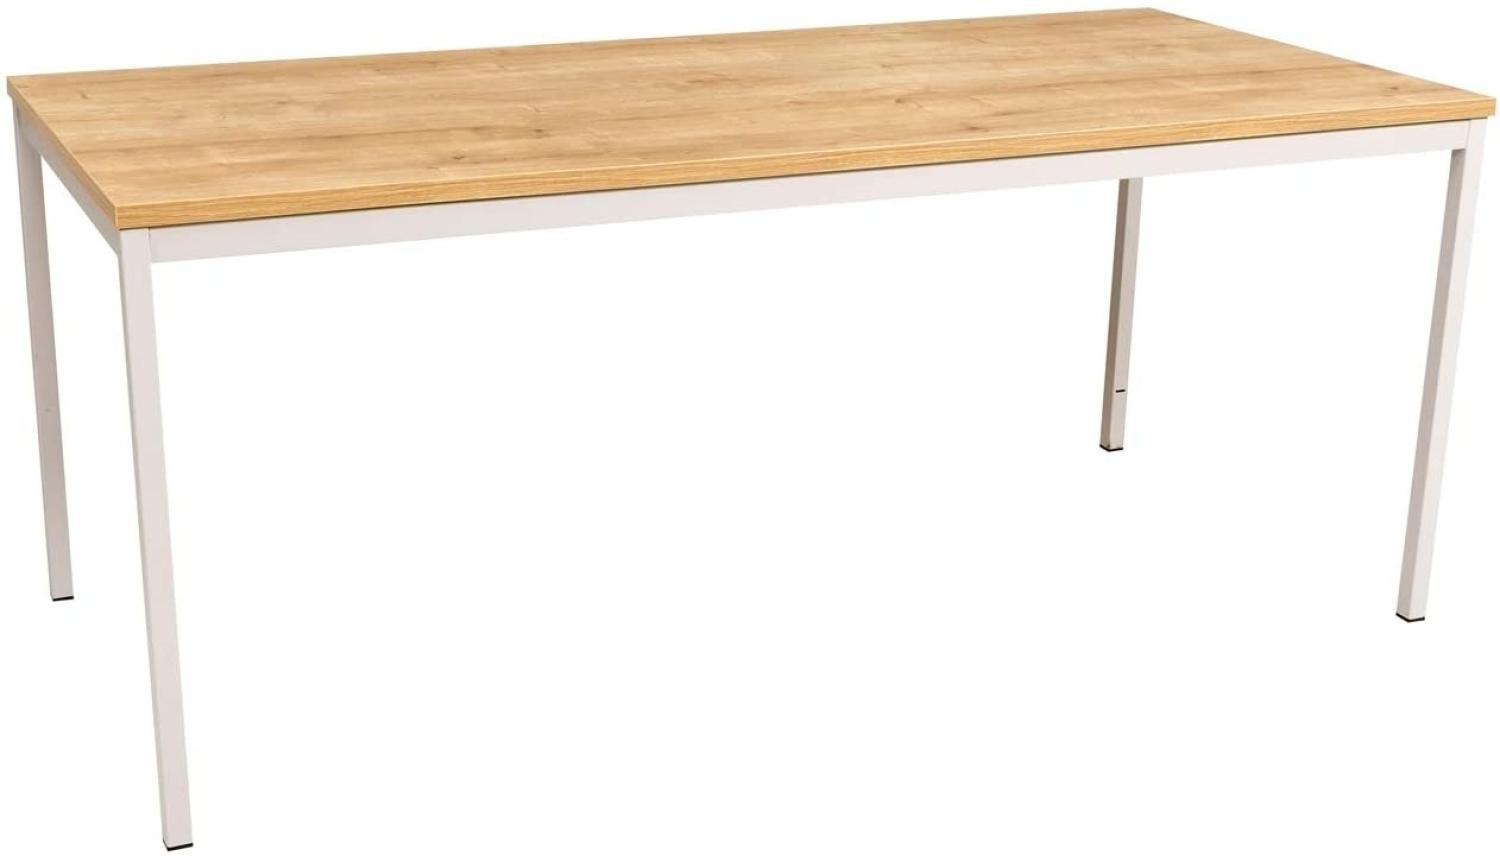 Furni24 Rechteckiger Universaltisch mit laminierter Platte Eiche 180x80x75 cm, Metallgestell und niveauausgleichs Füßen, ideal im Homeoffice als Schreibtisch, Konferenztisch, Computertisch, Esstisch Bild 1